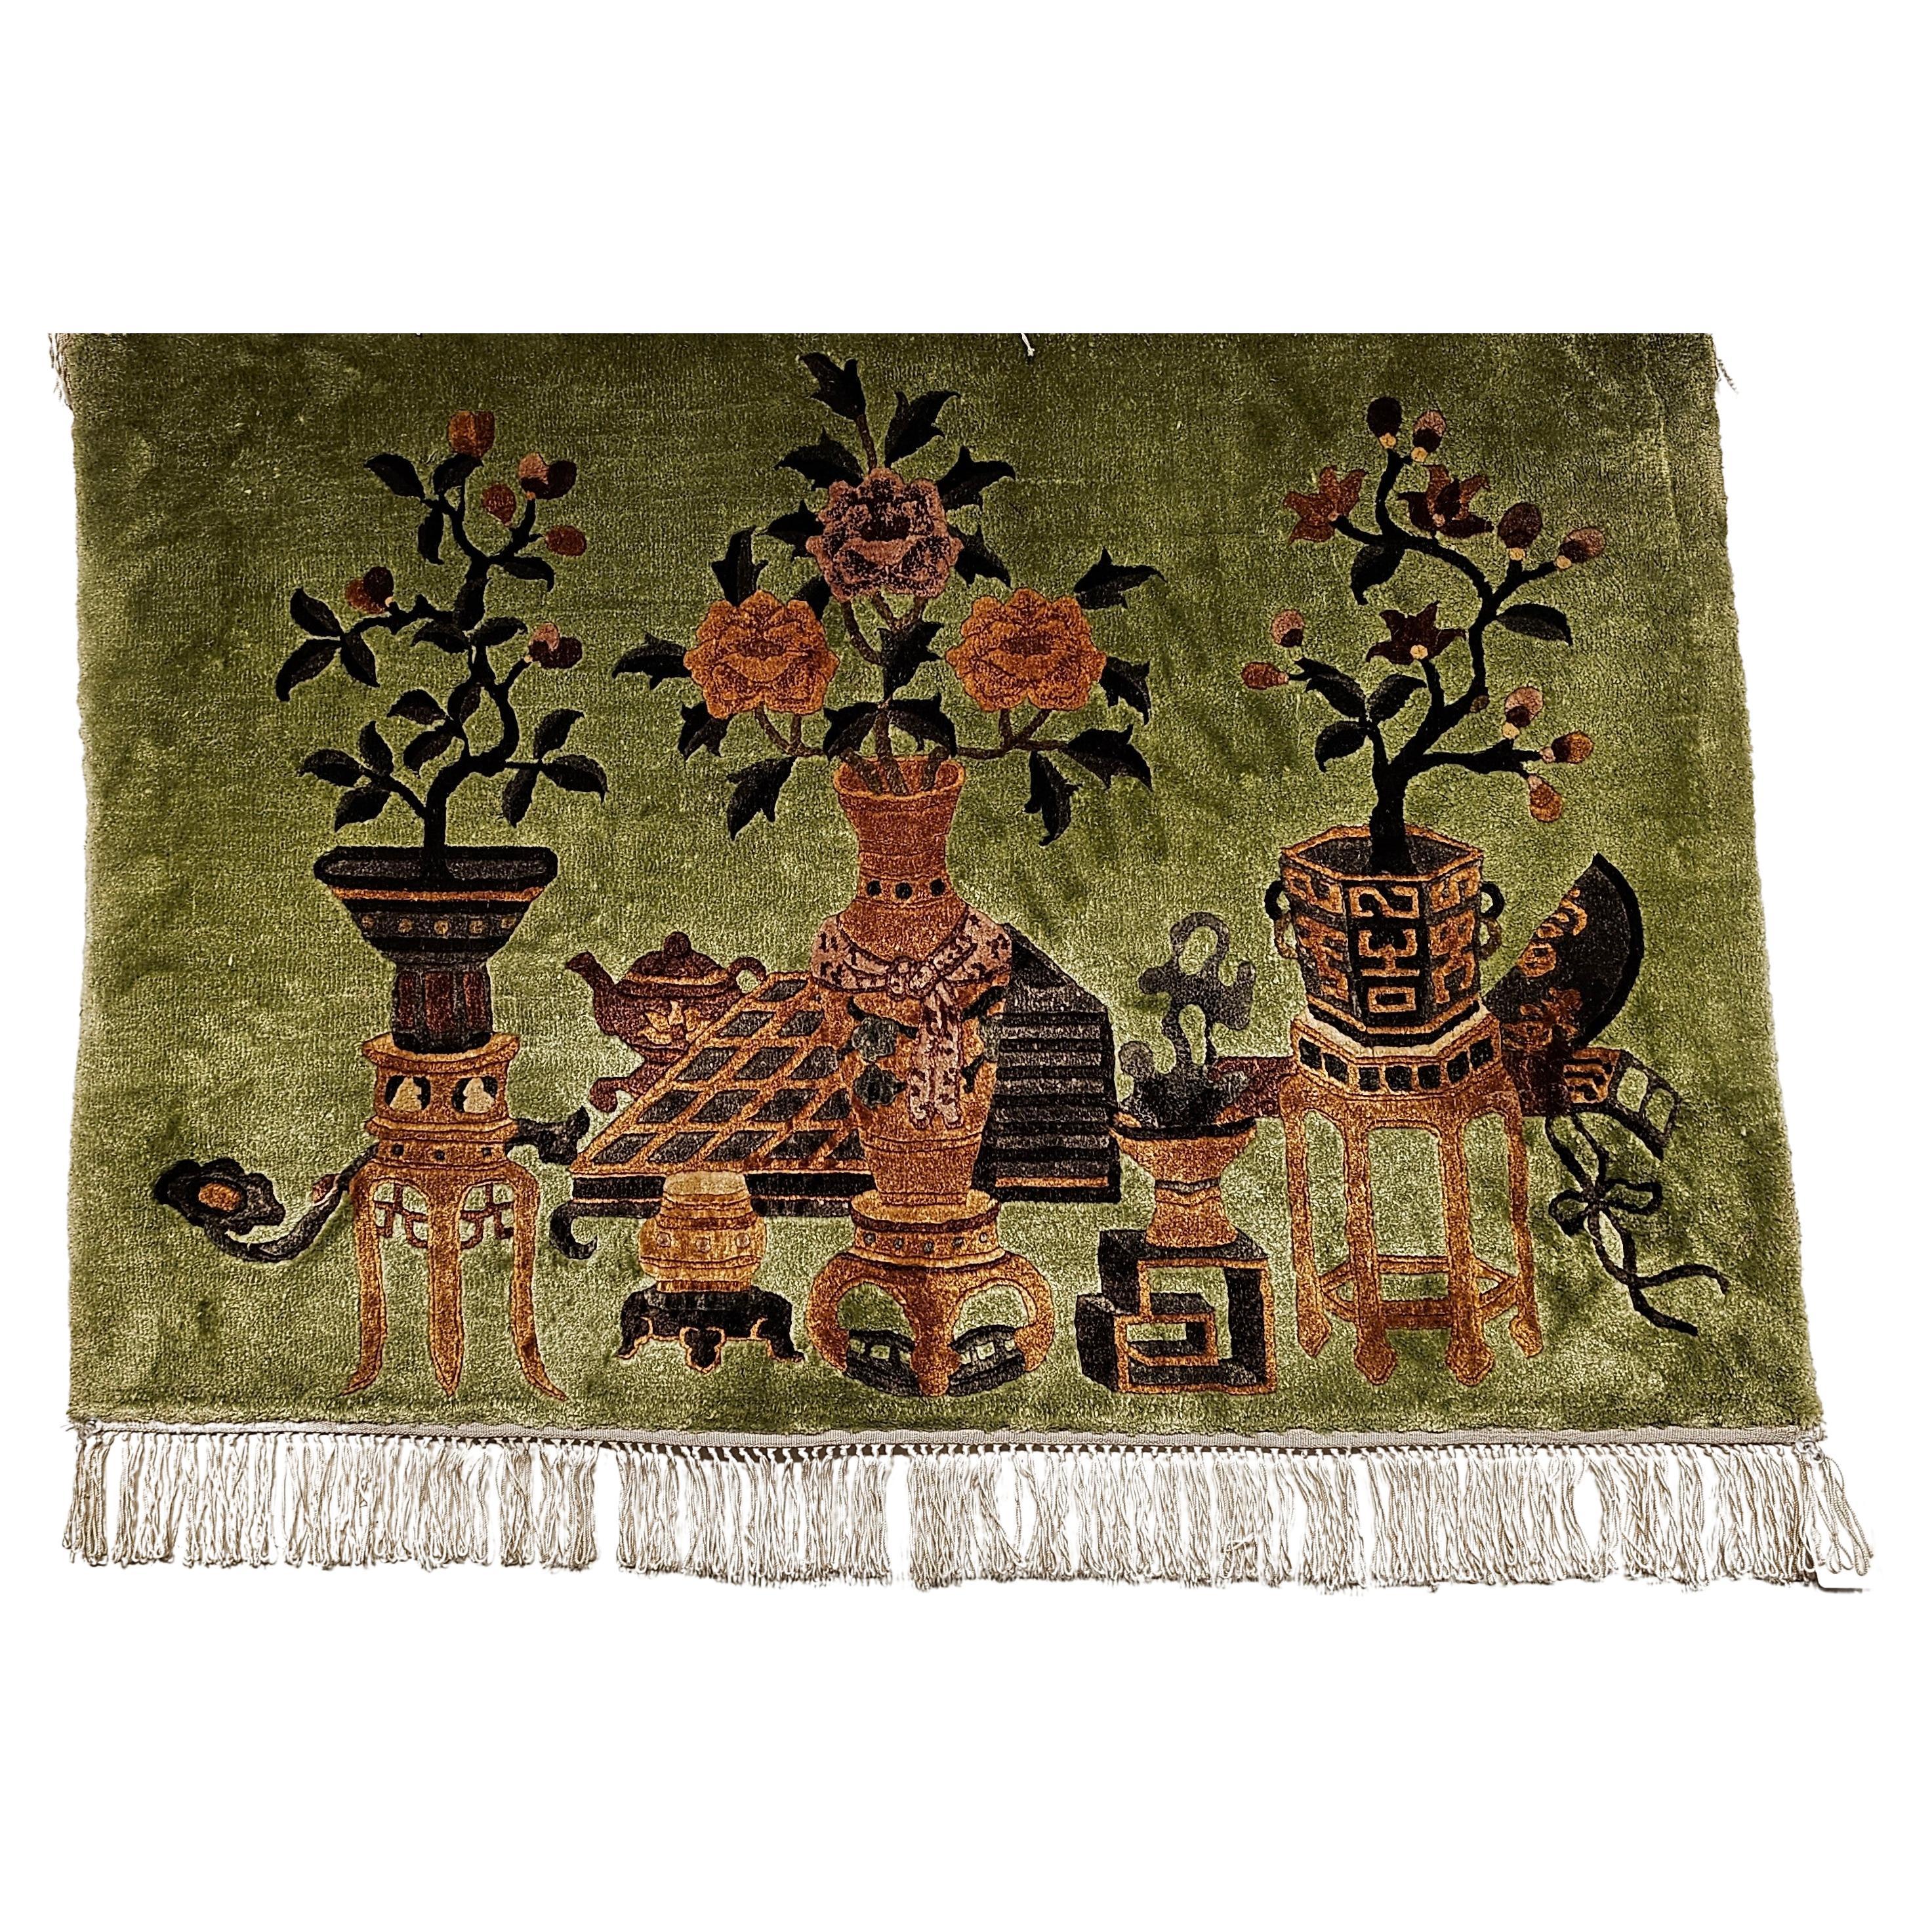  Paire de tapis picturaux en soie partielle de style Art déco chinois à motif de vase classique, datant du milieu des années 1900.  Les tapis ont un poil de laine sur une base de soie.  Le fond est d'une belle couleur vert pâle avec des motifs de